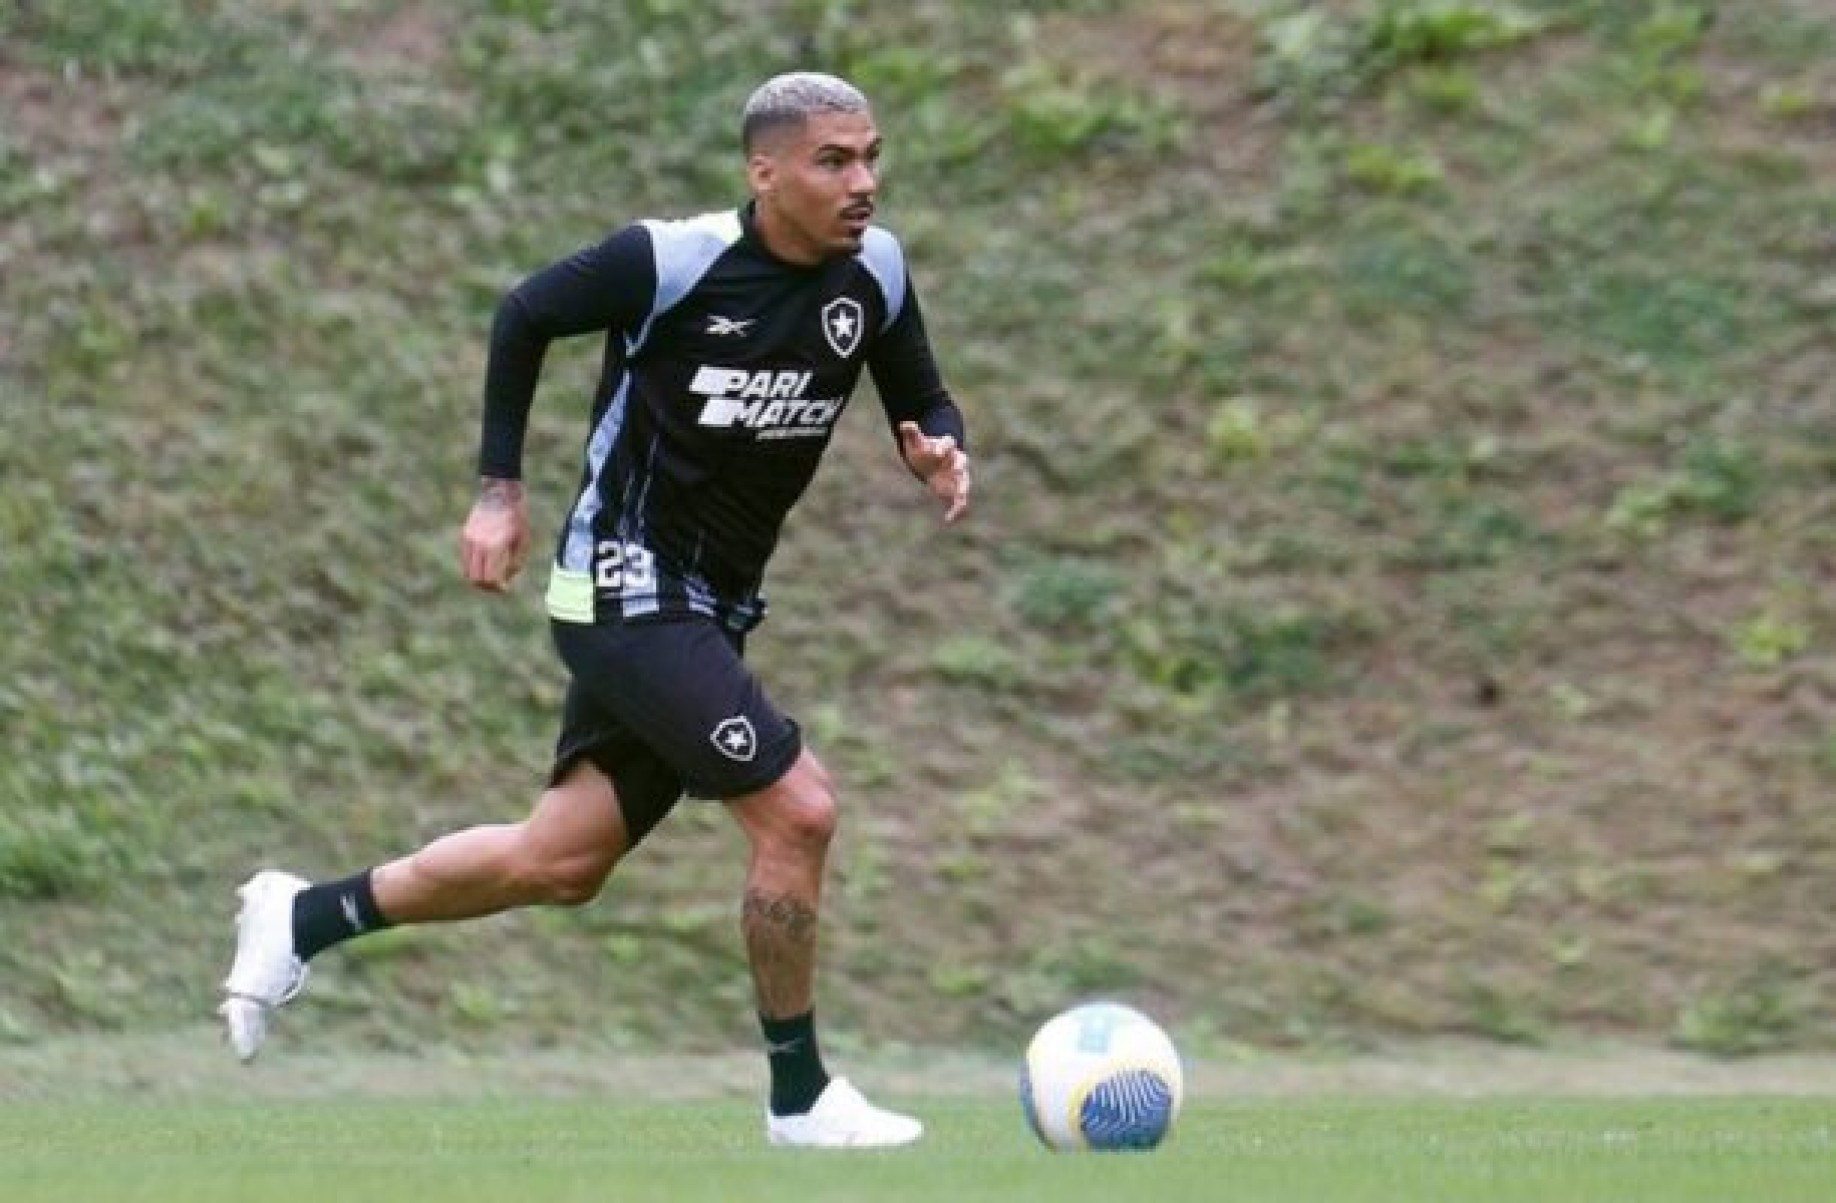 Allan treina pelo Botafogo e ganha data de apresentação